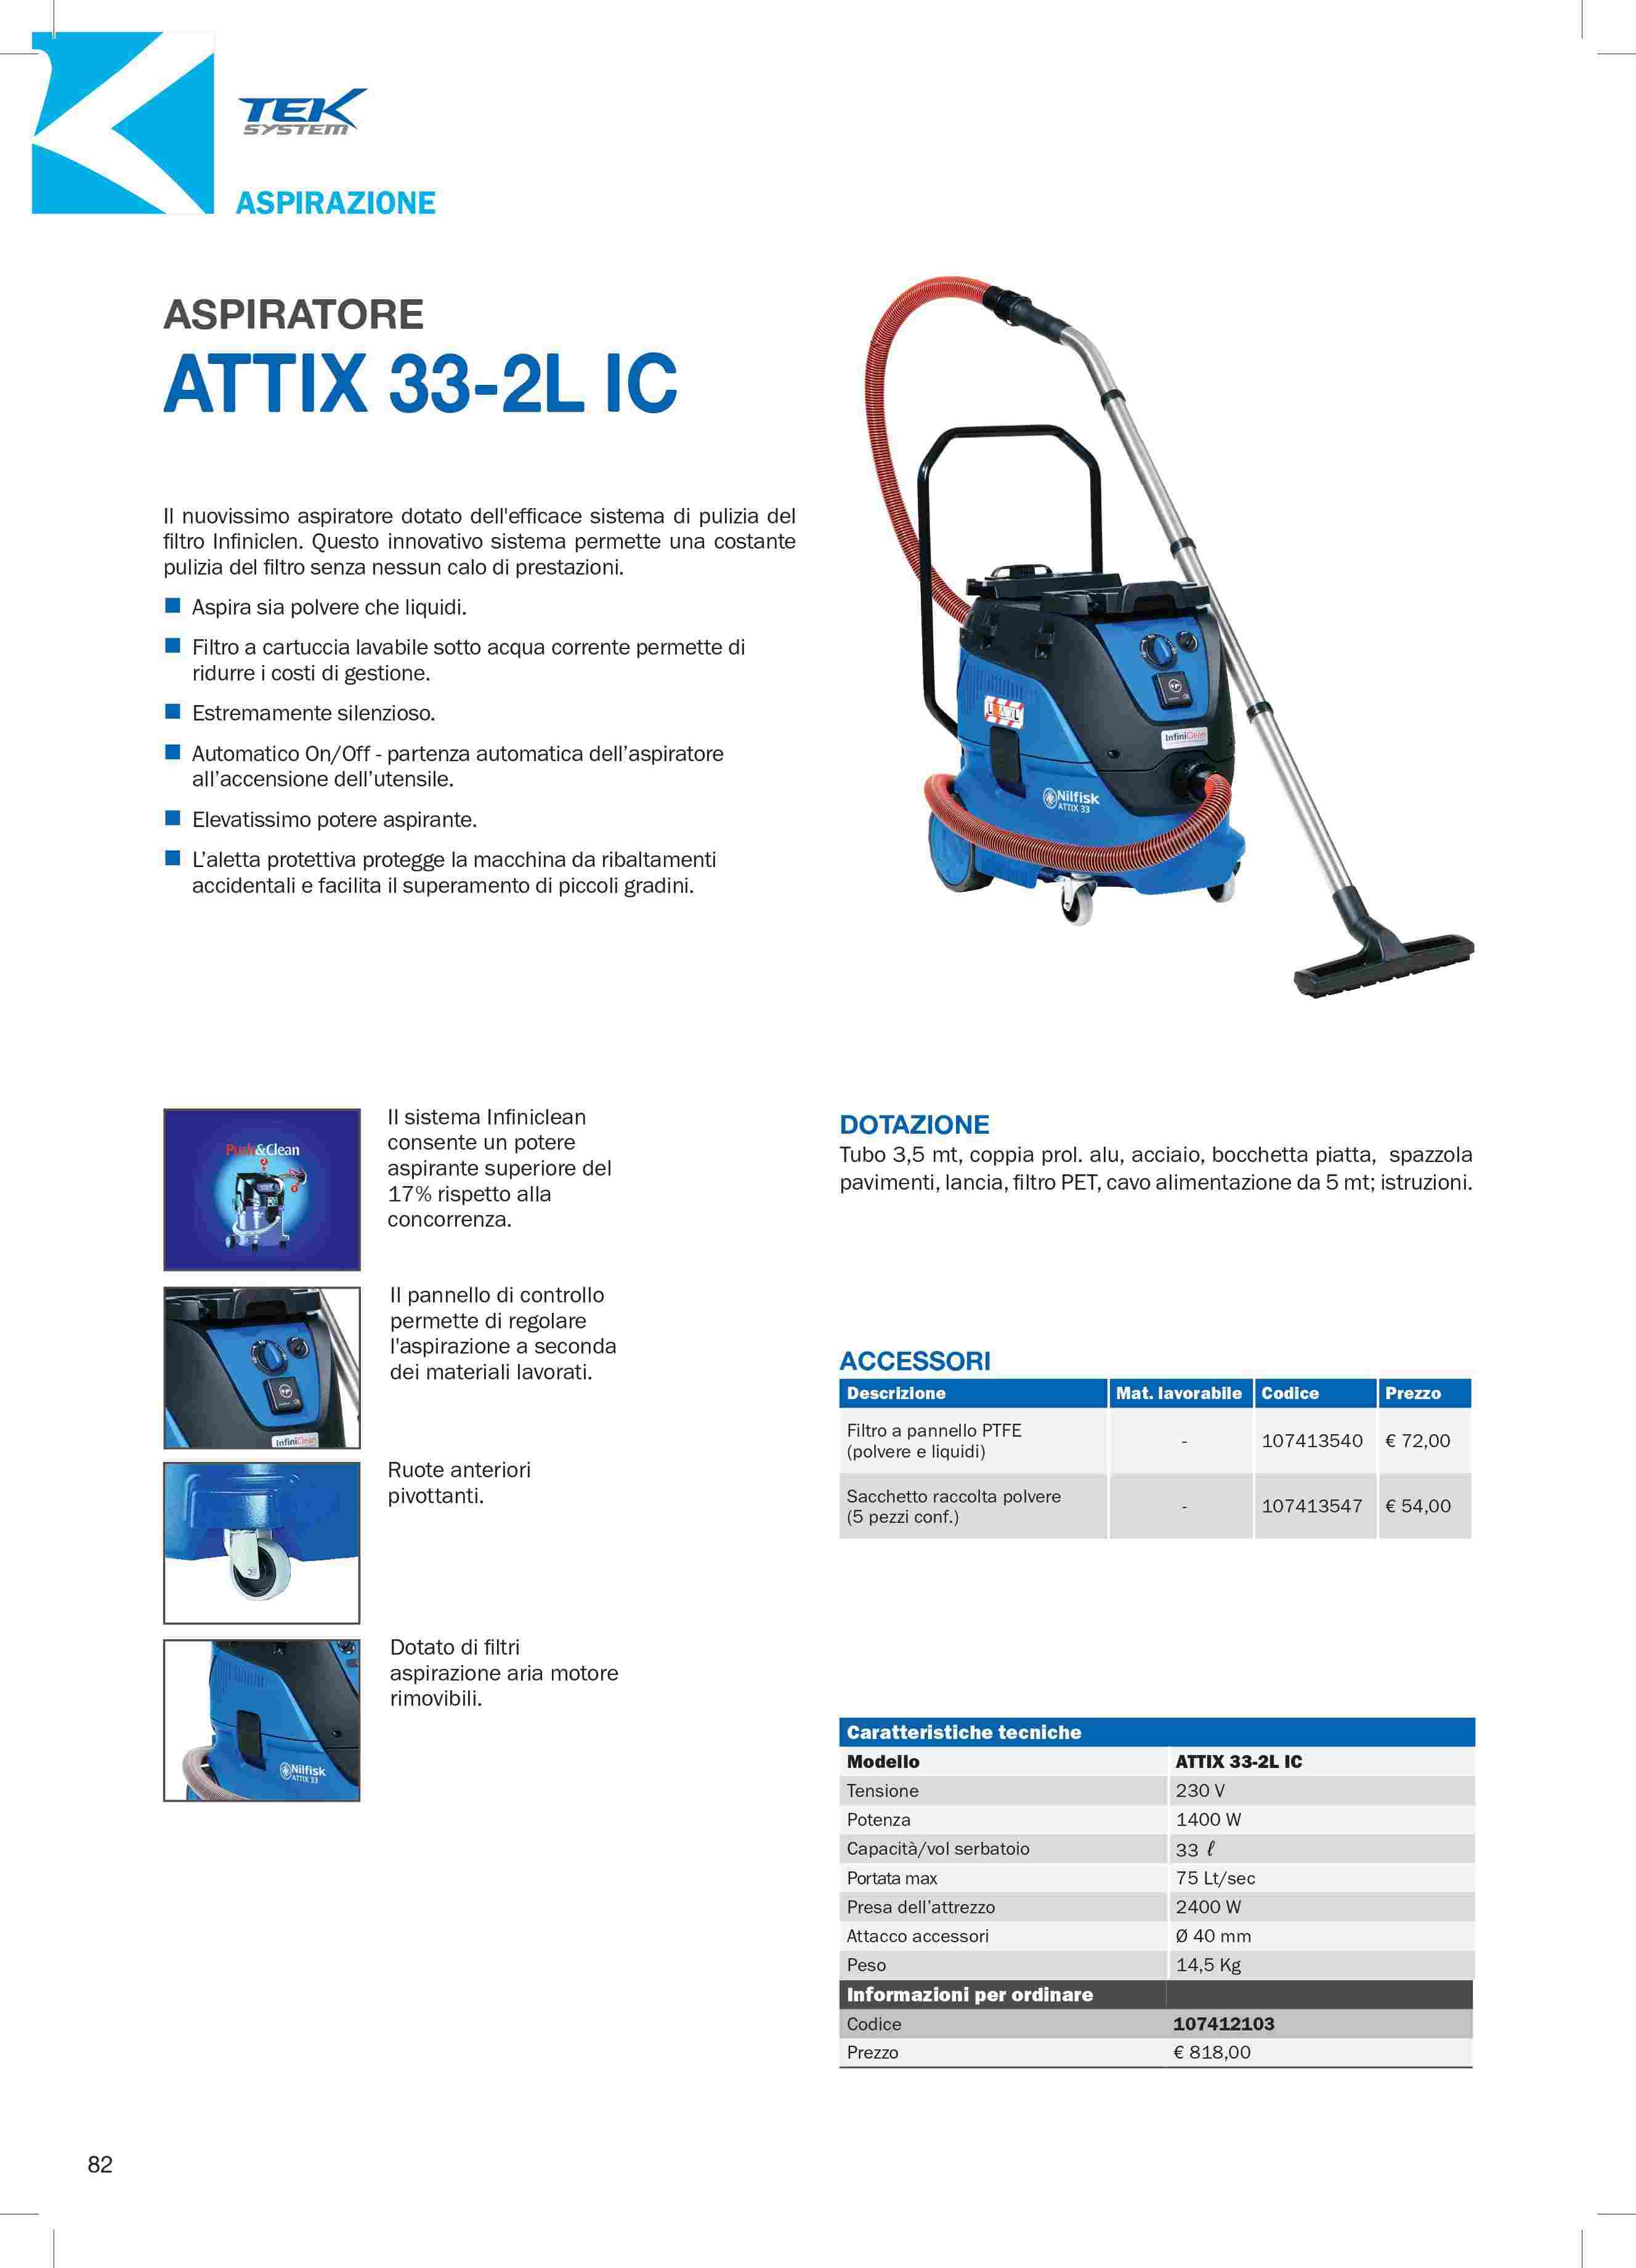 ASPIRATORE ATTIX 33-2L IC | Tek System